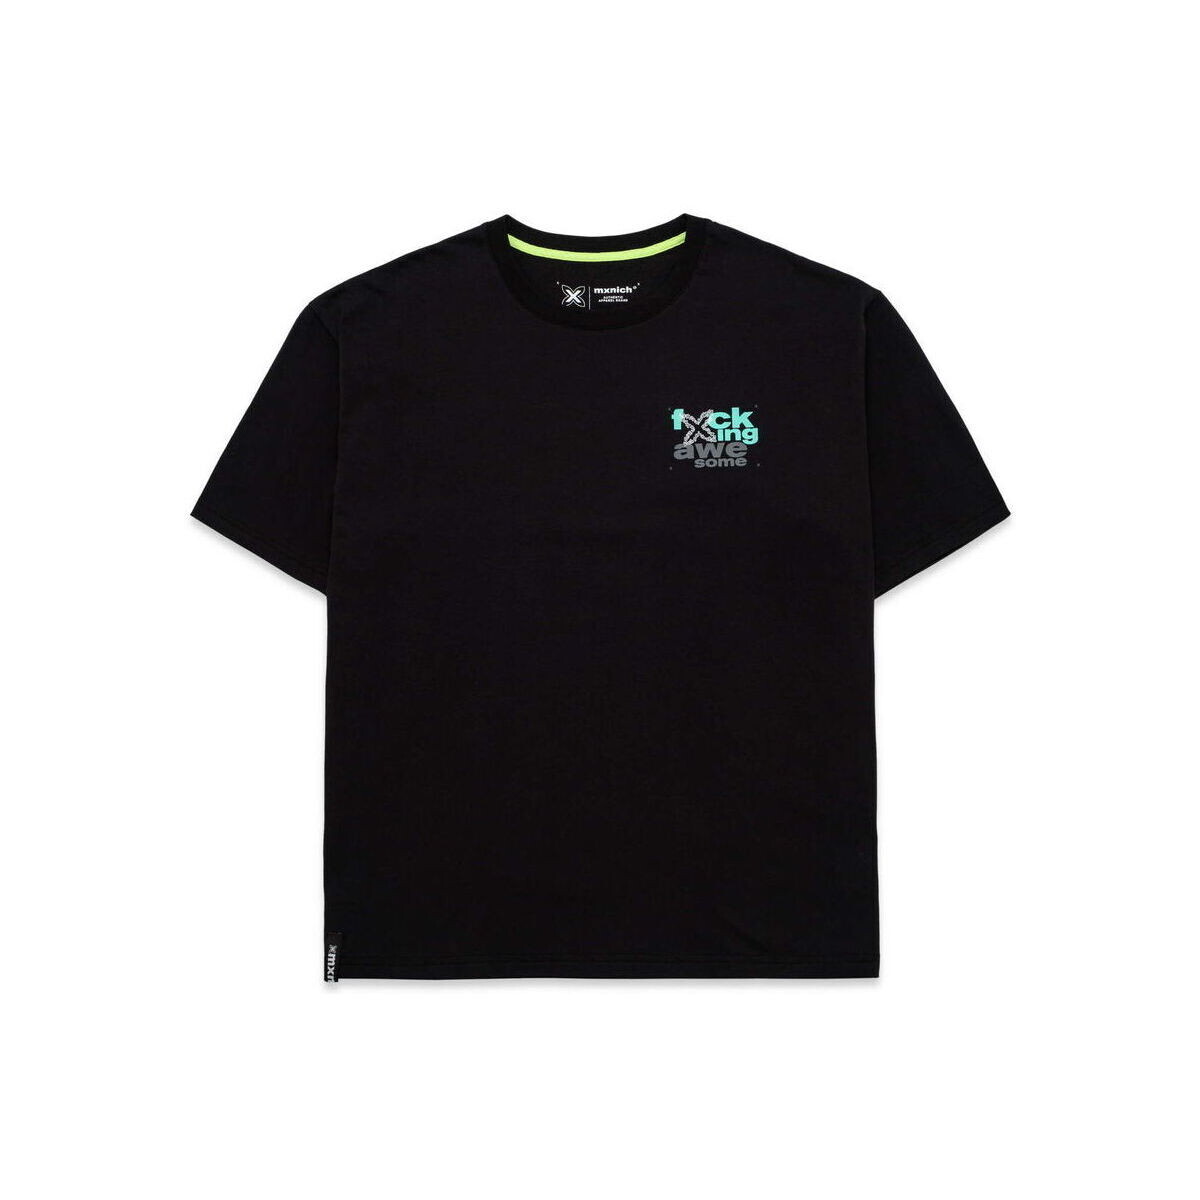 Textil Muži Trička s krátkým rukávem Munich T-shirt oversize awesome Černá